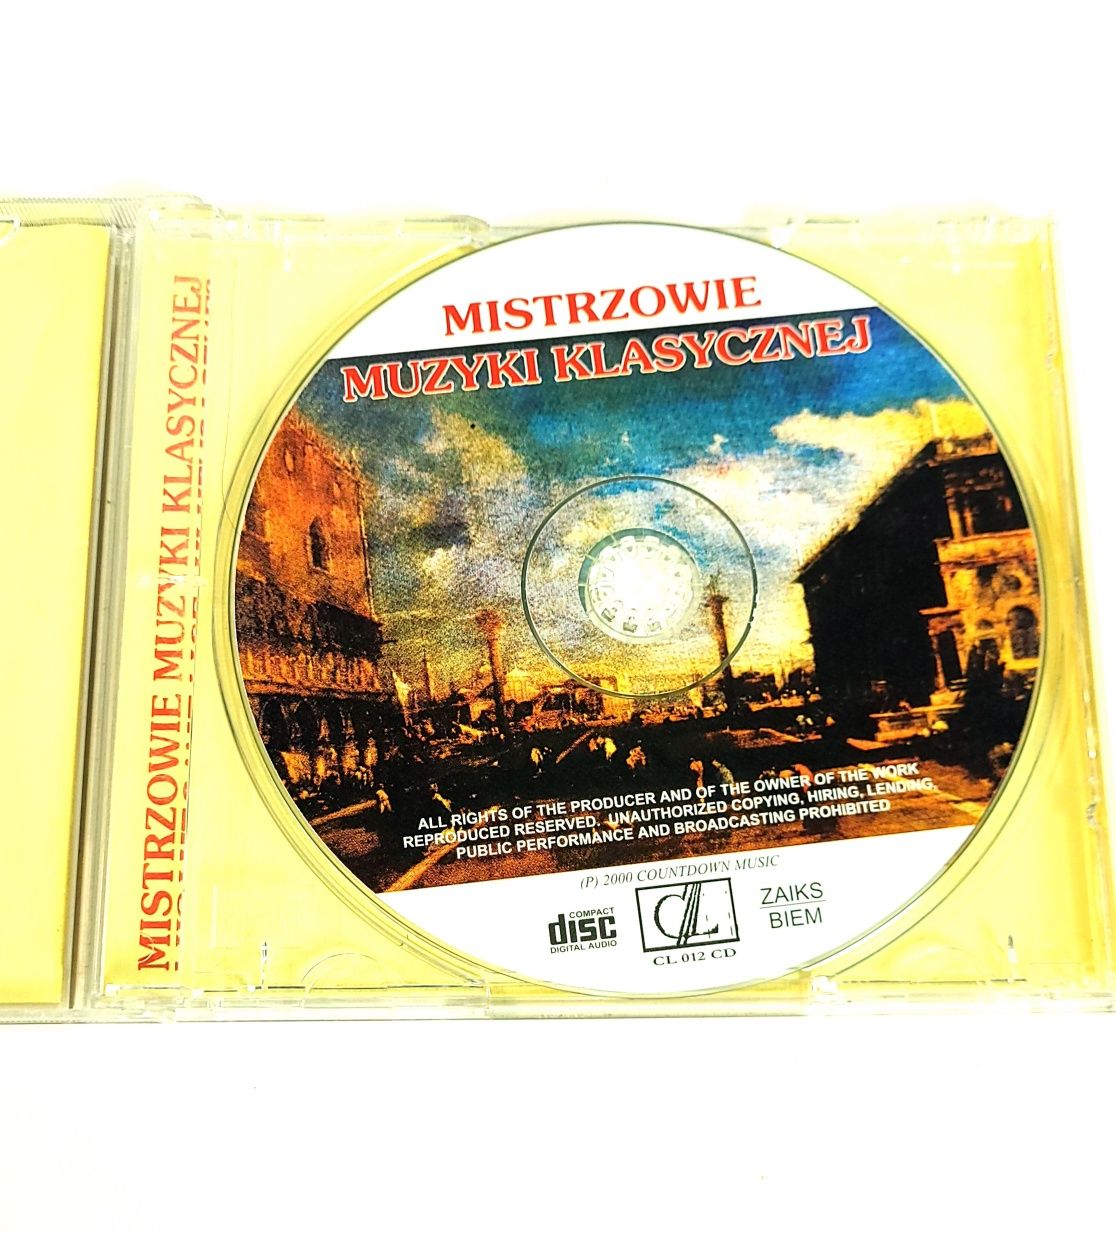 Mistrzowie muzyki klasycznej płyta cd Czajkowski Bach Mozart